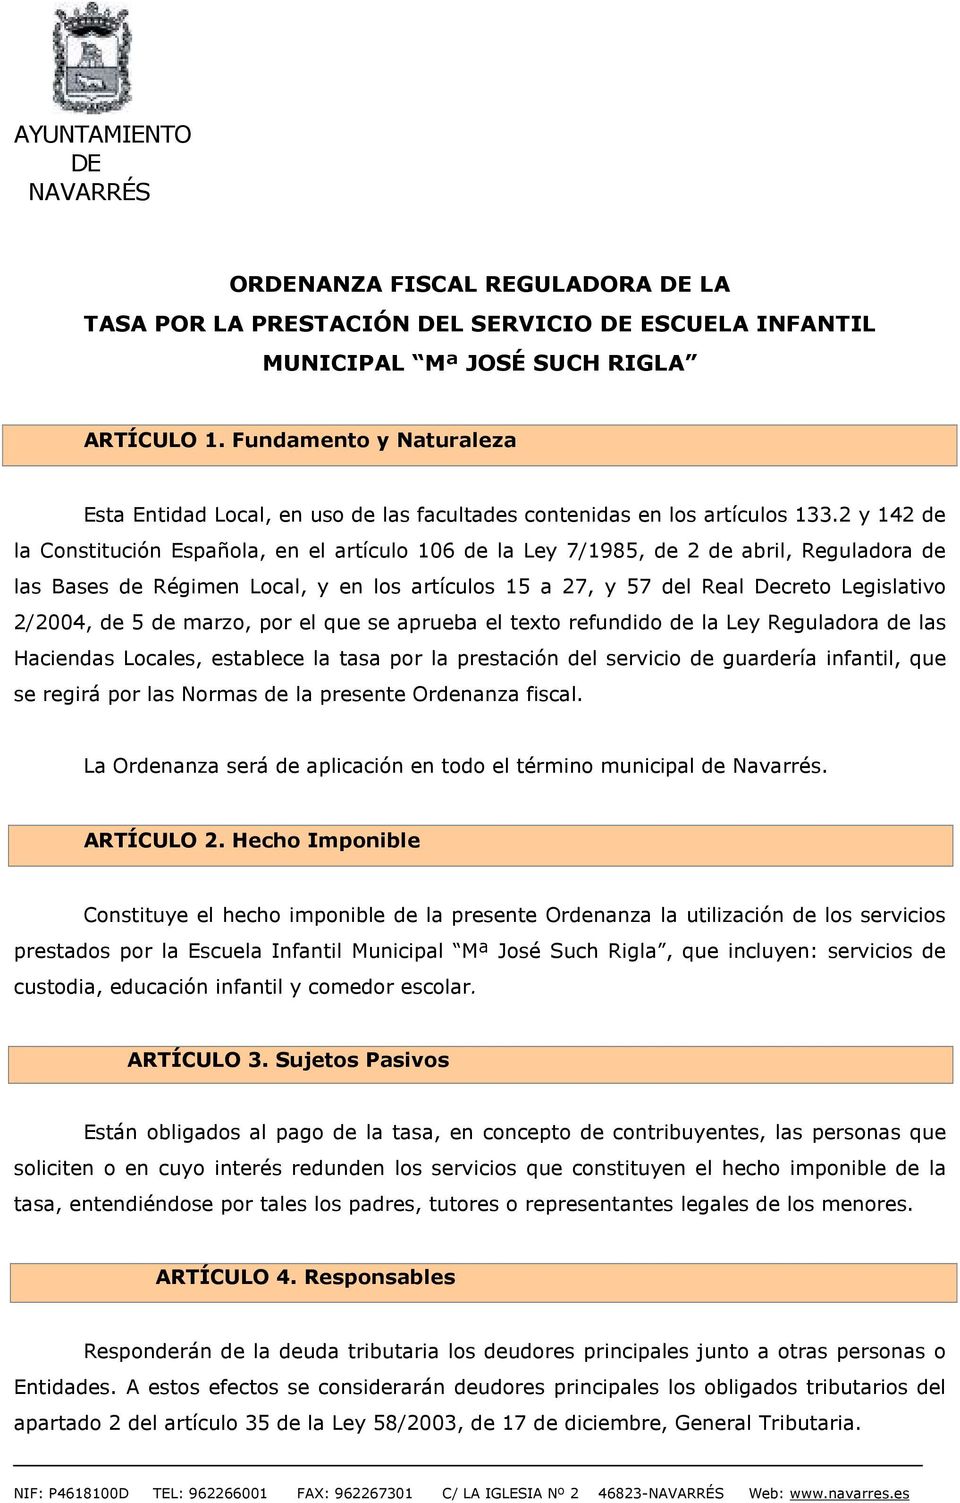 2 y 142 de la Constitución Española, en el artículo 106 de la Ley 7/1985, de 2 de abril, Reguladora de las Bases de Régimen Local, y en los artículos 15 a 27, y 57 del Real Decreto Legislativo